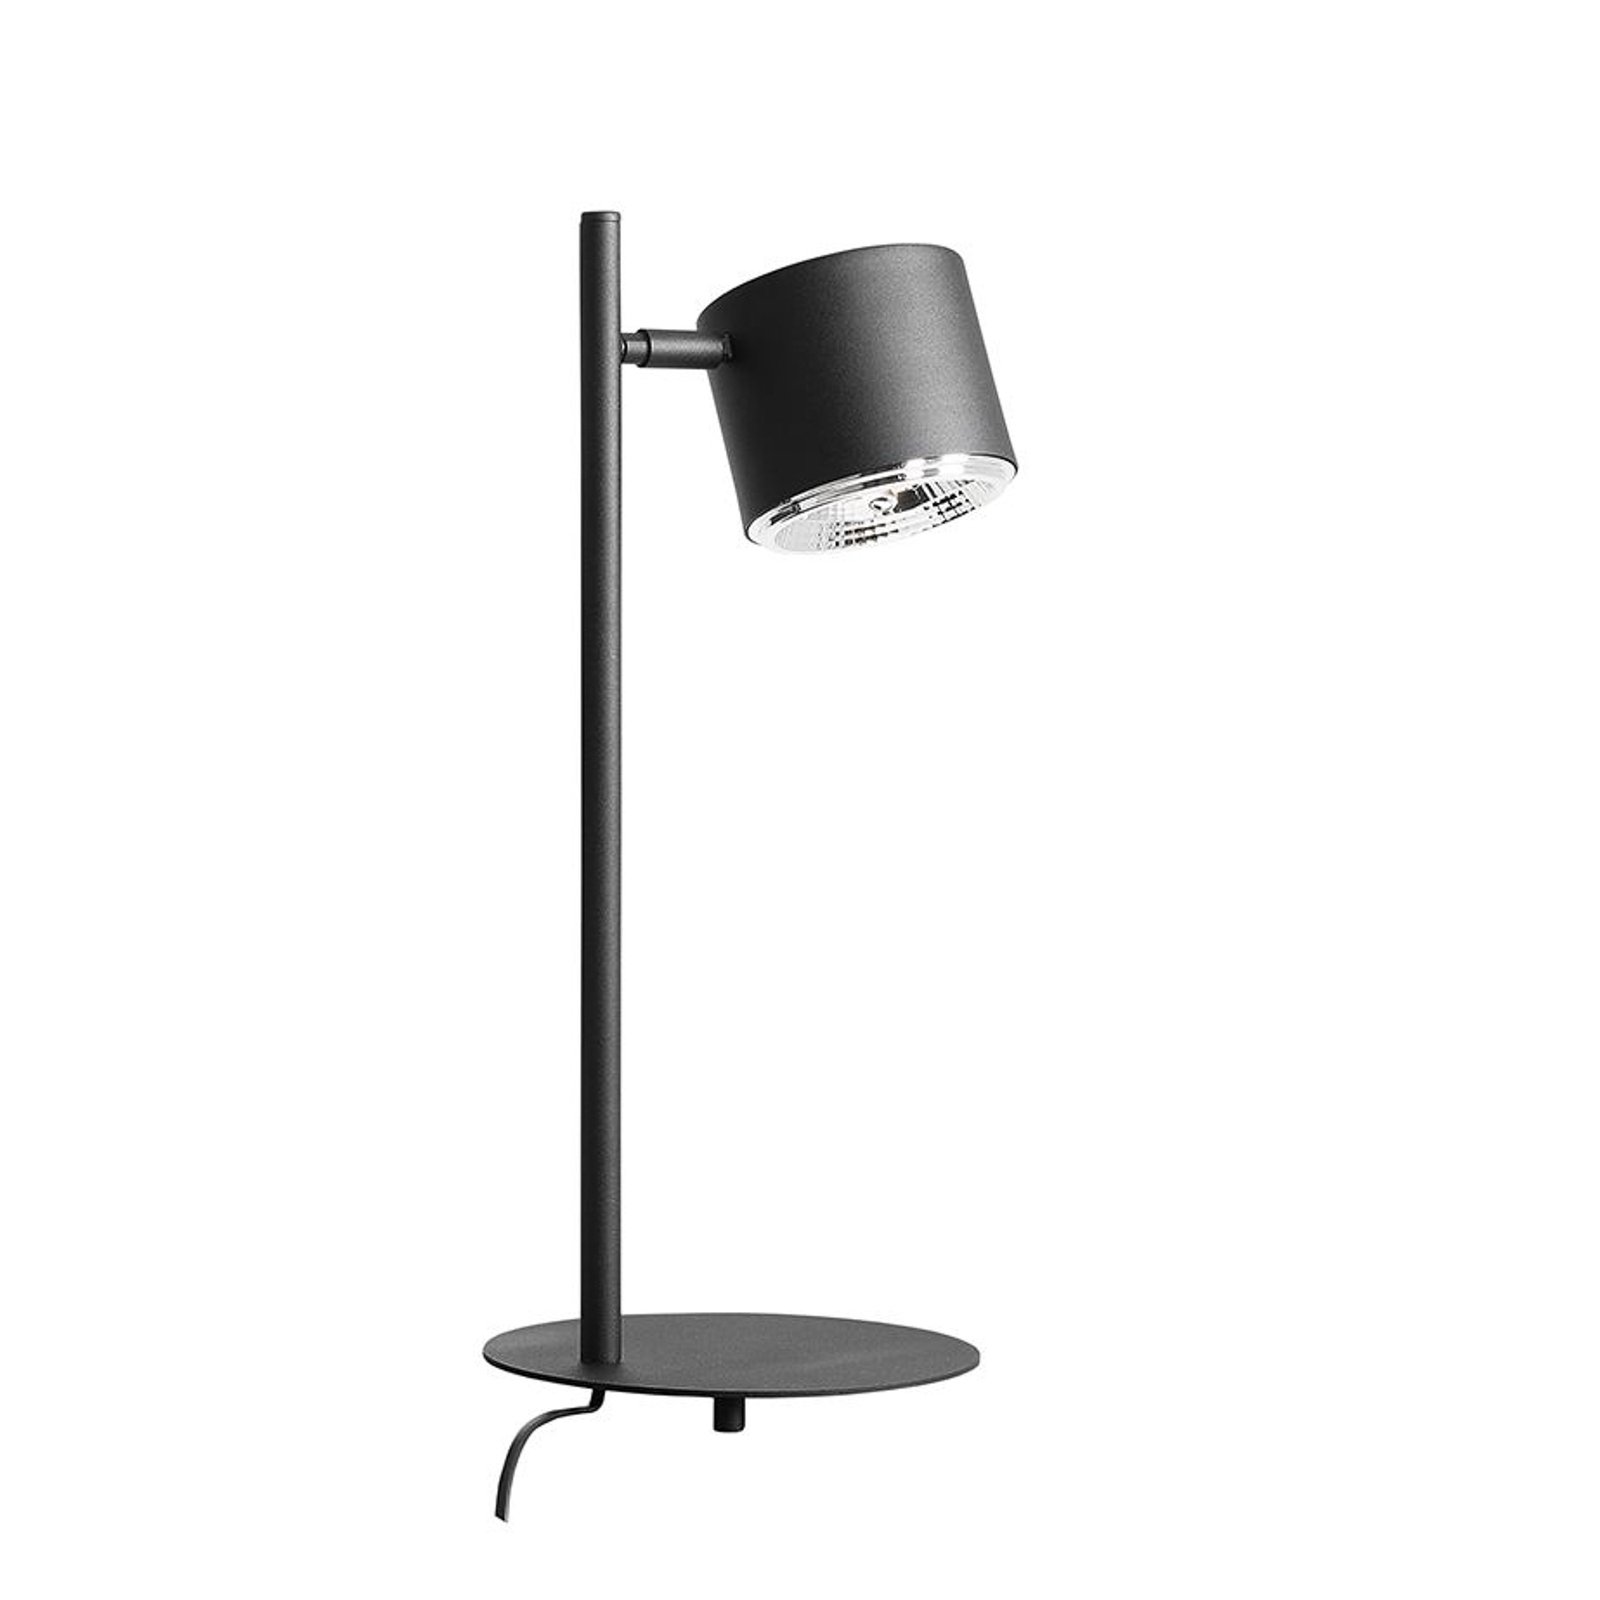 Bot asztali lámpa, mozgatható fekete lámpafejjel